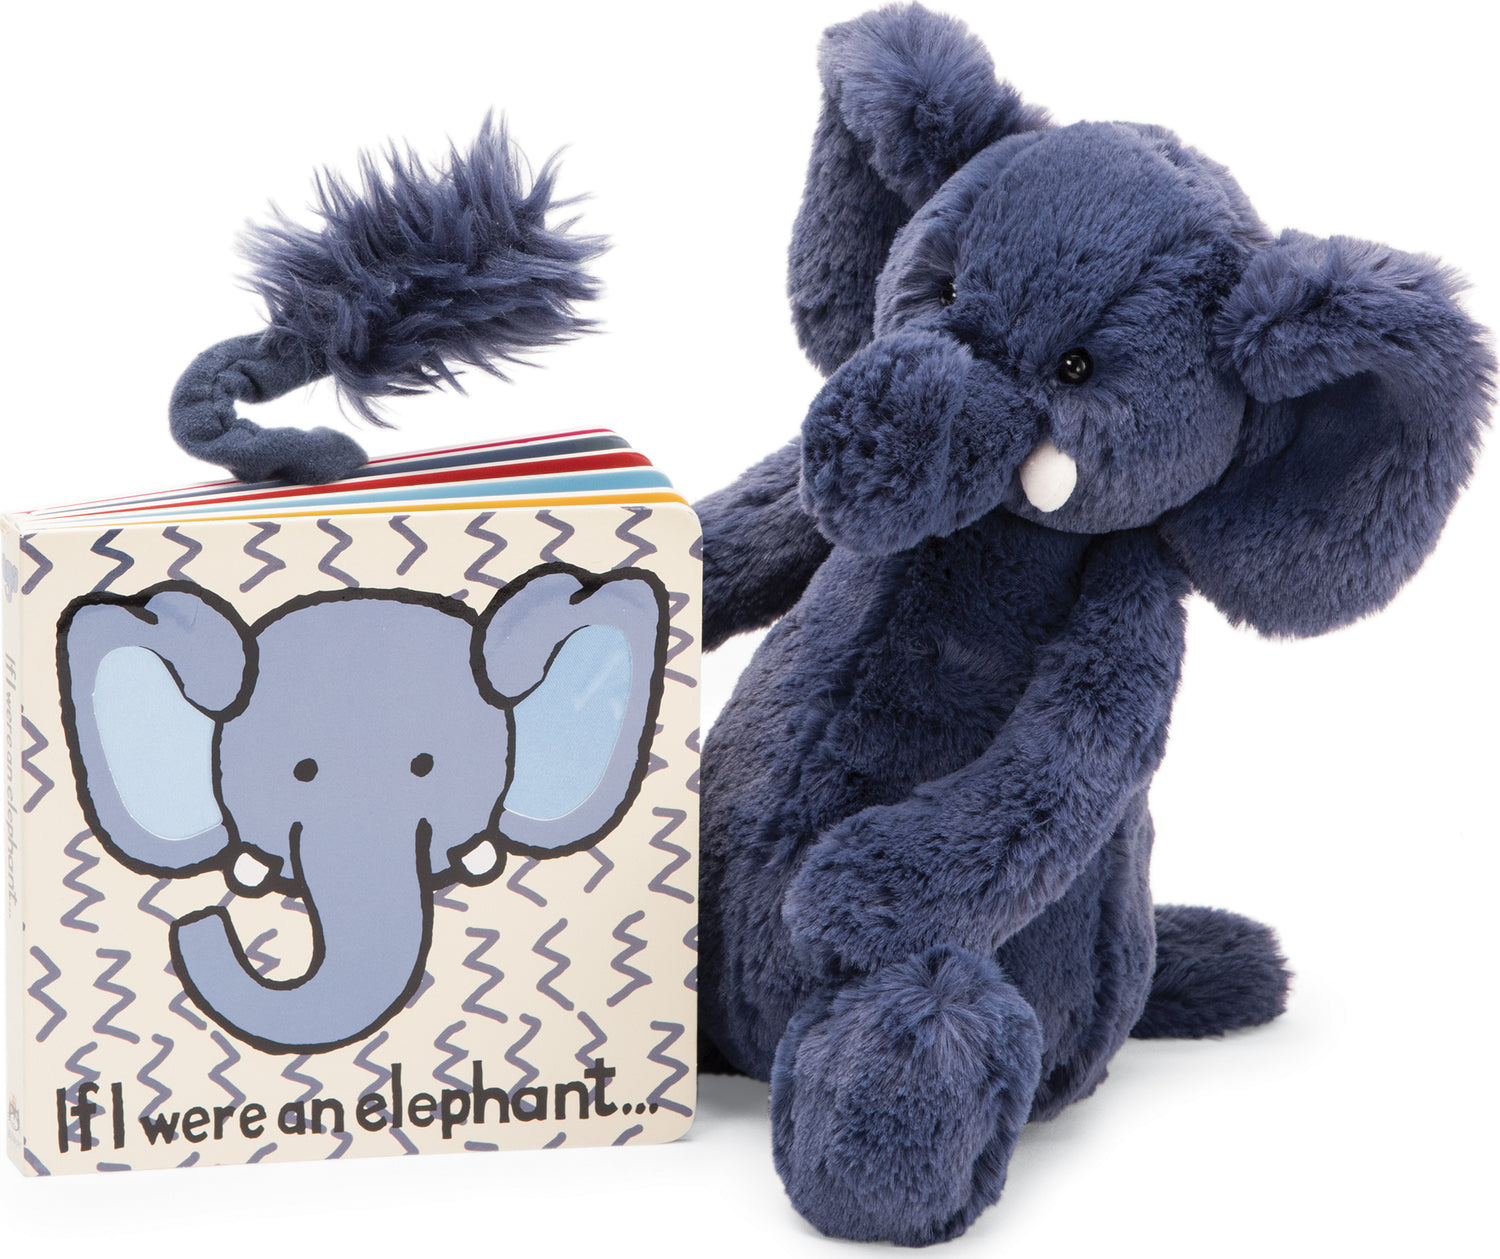 If I Were an Elephant Book